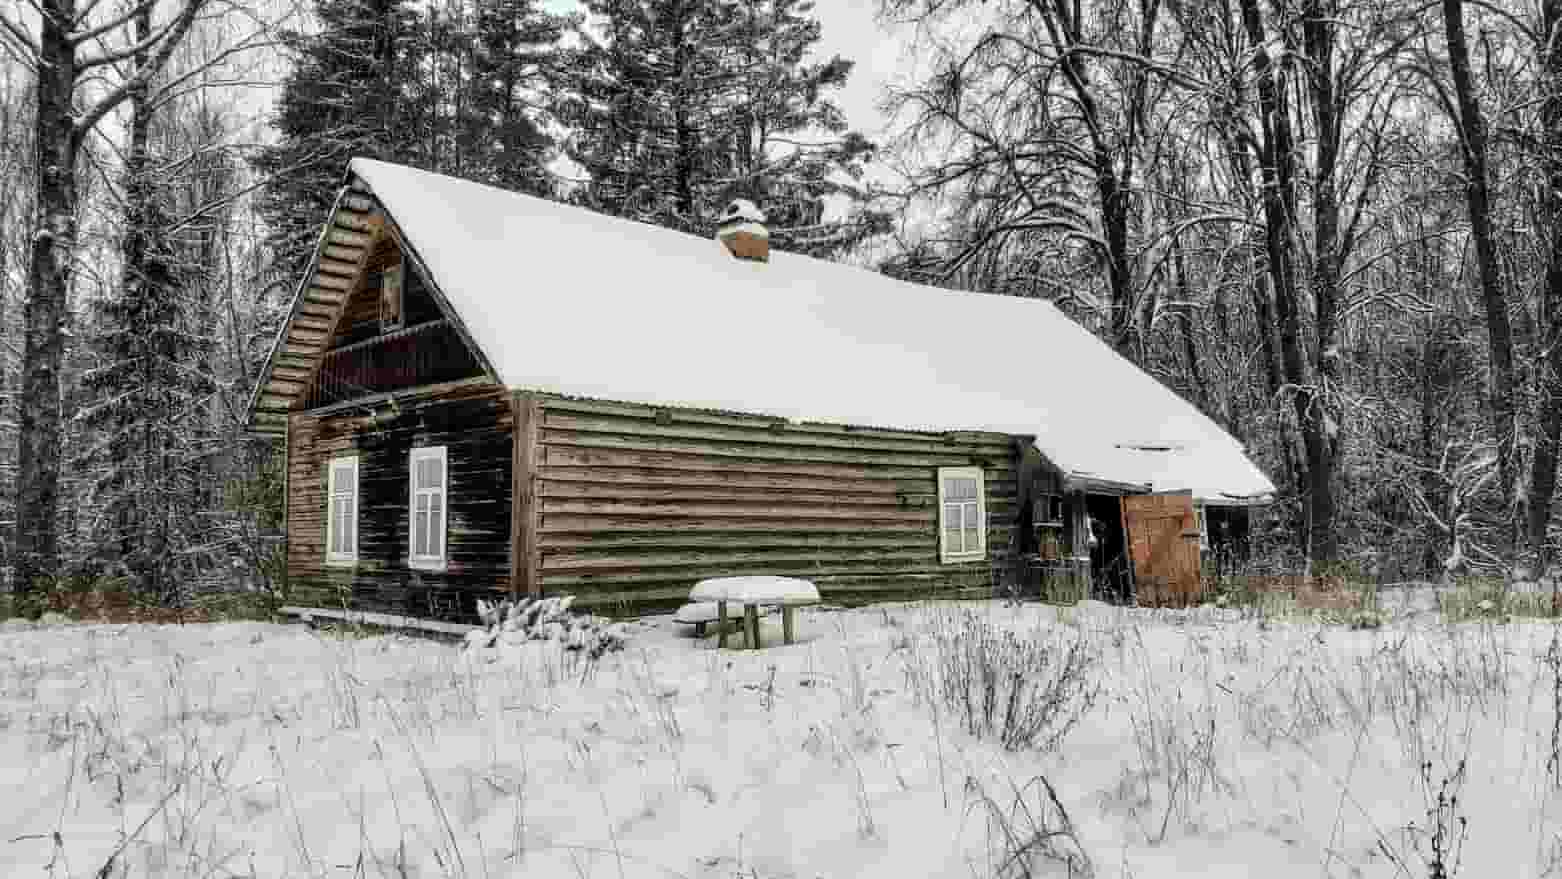 Крепкий домик на эстонском хуторе в хвойном лесу под Старым Изборском 